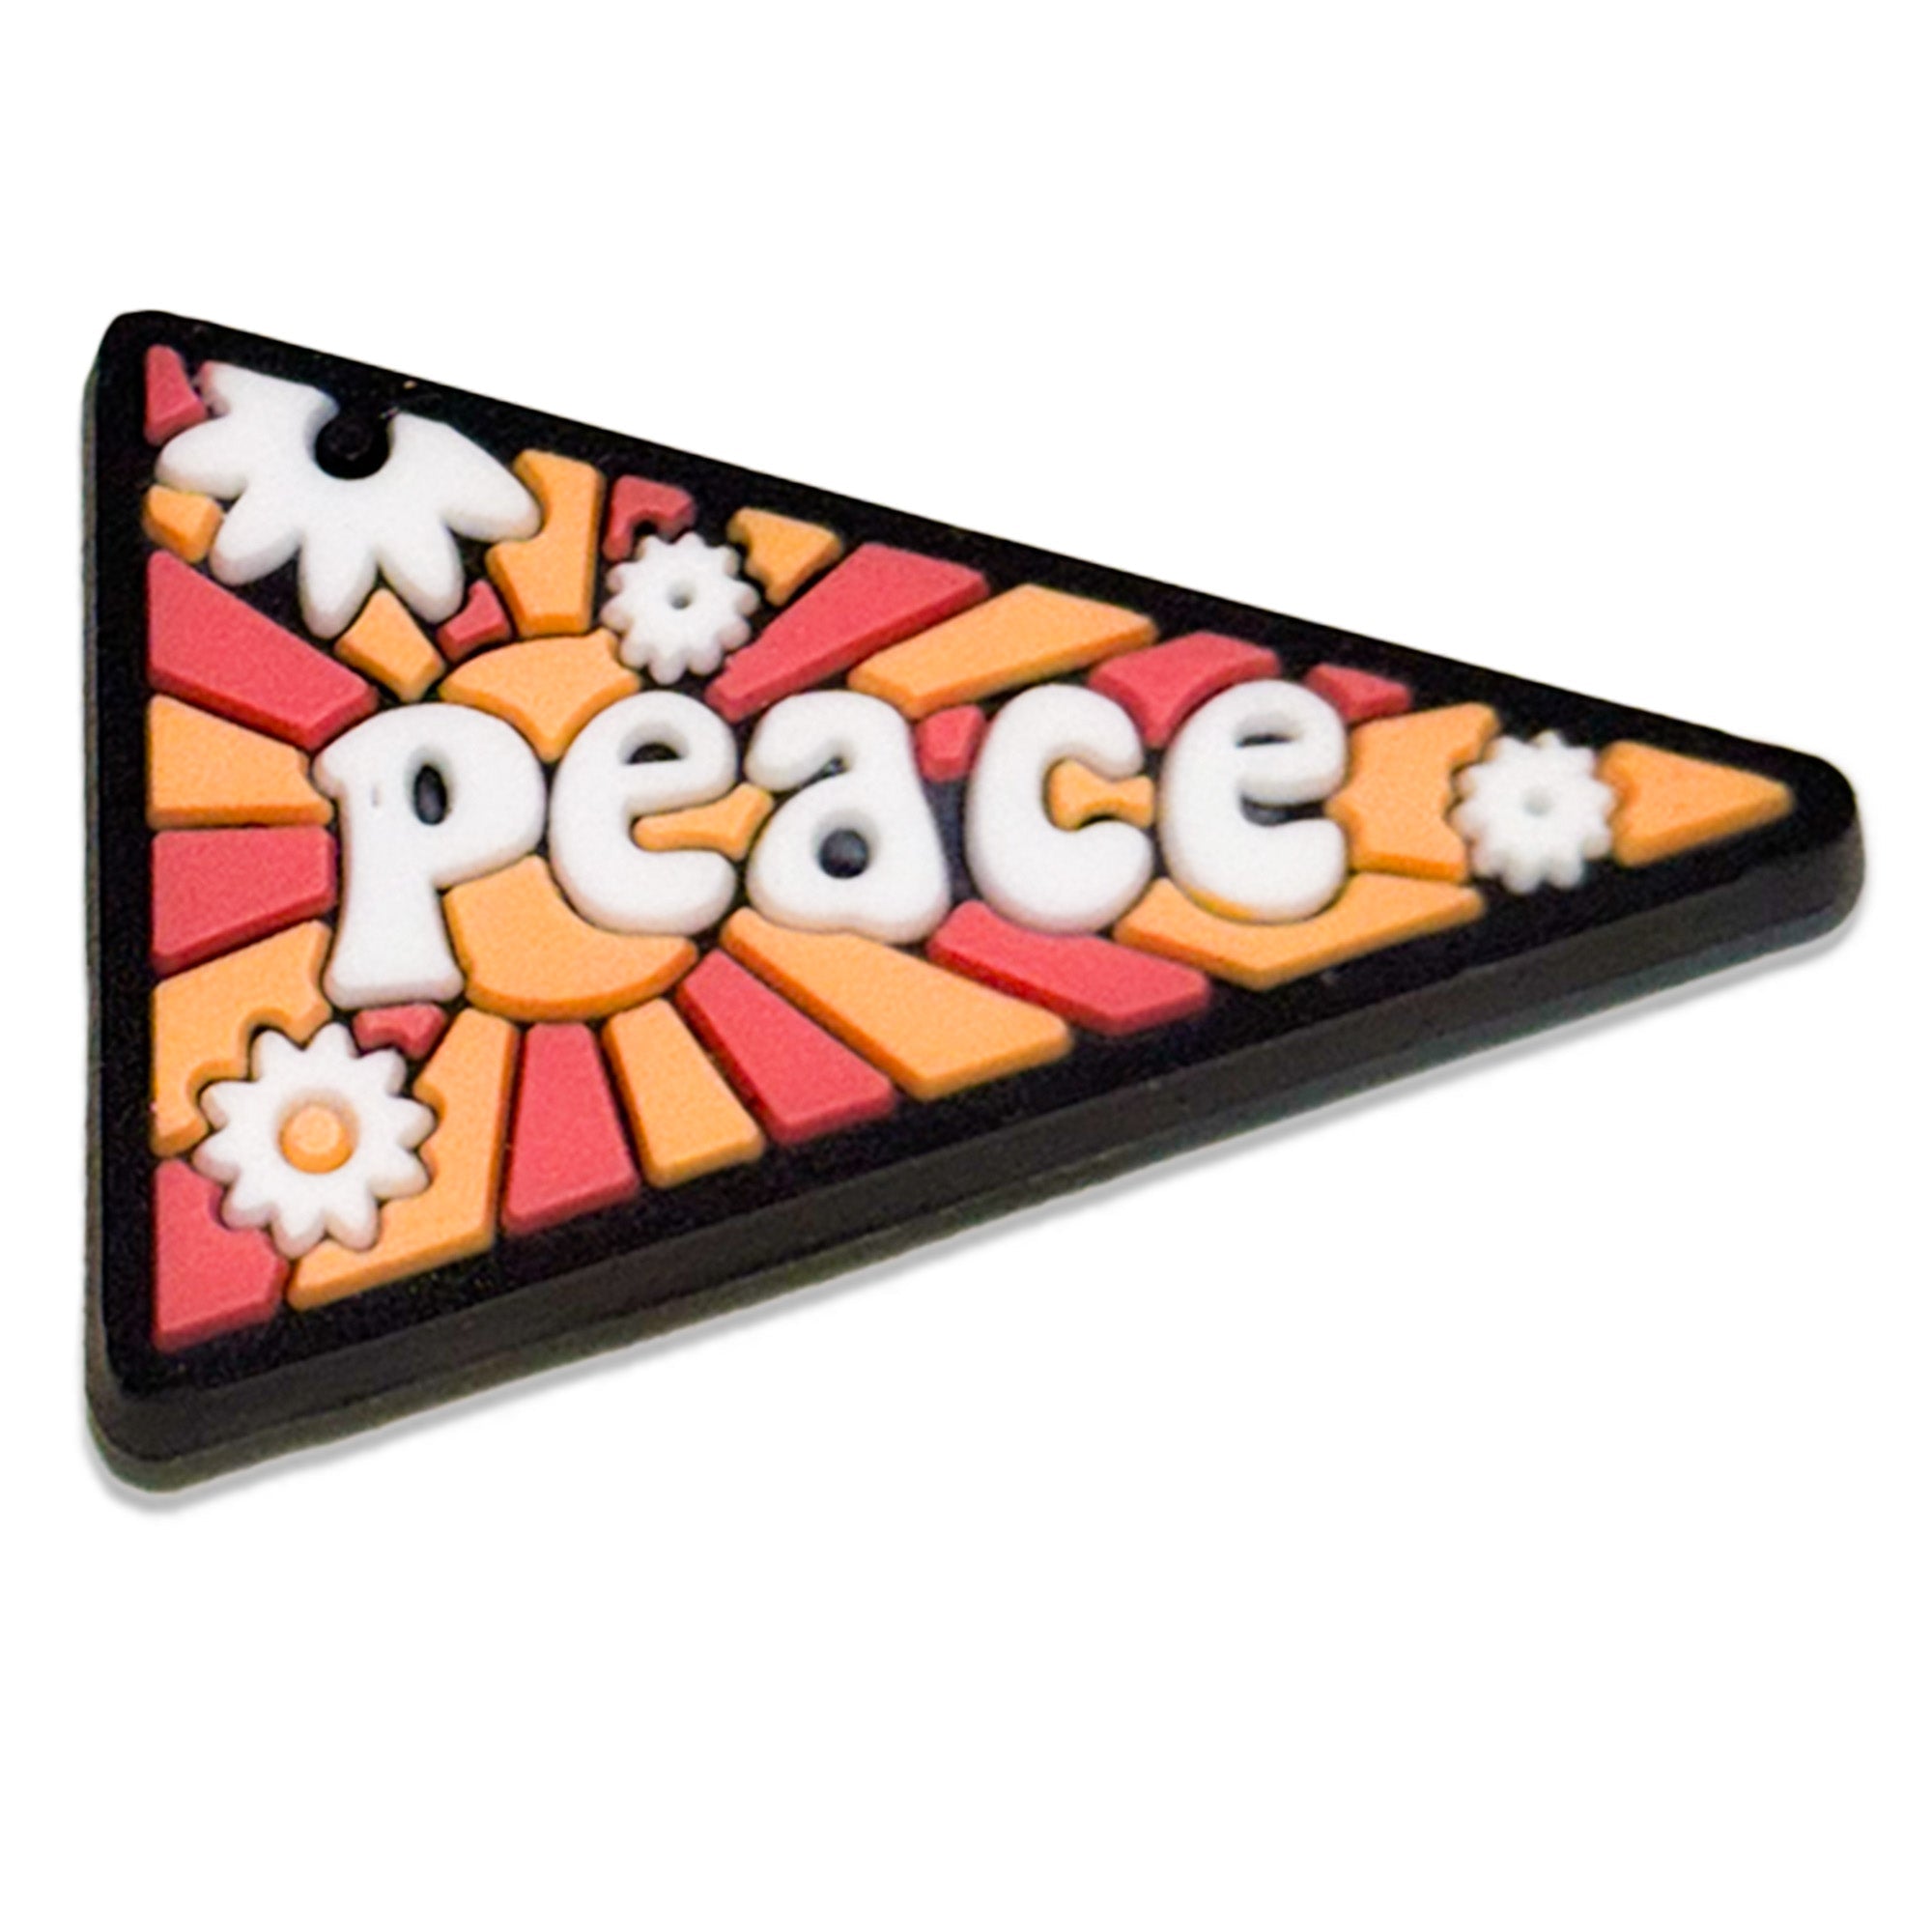 Peace.... : Shoe Charm - Questsole